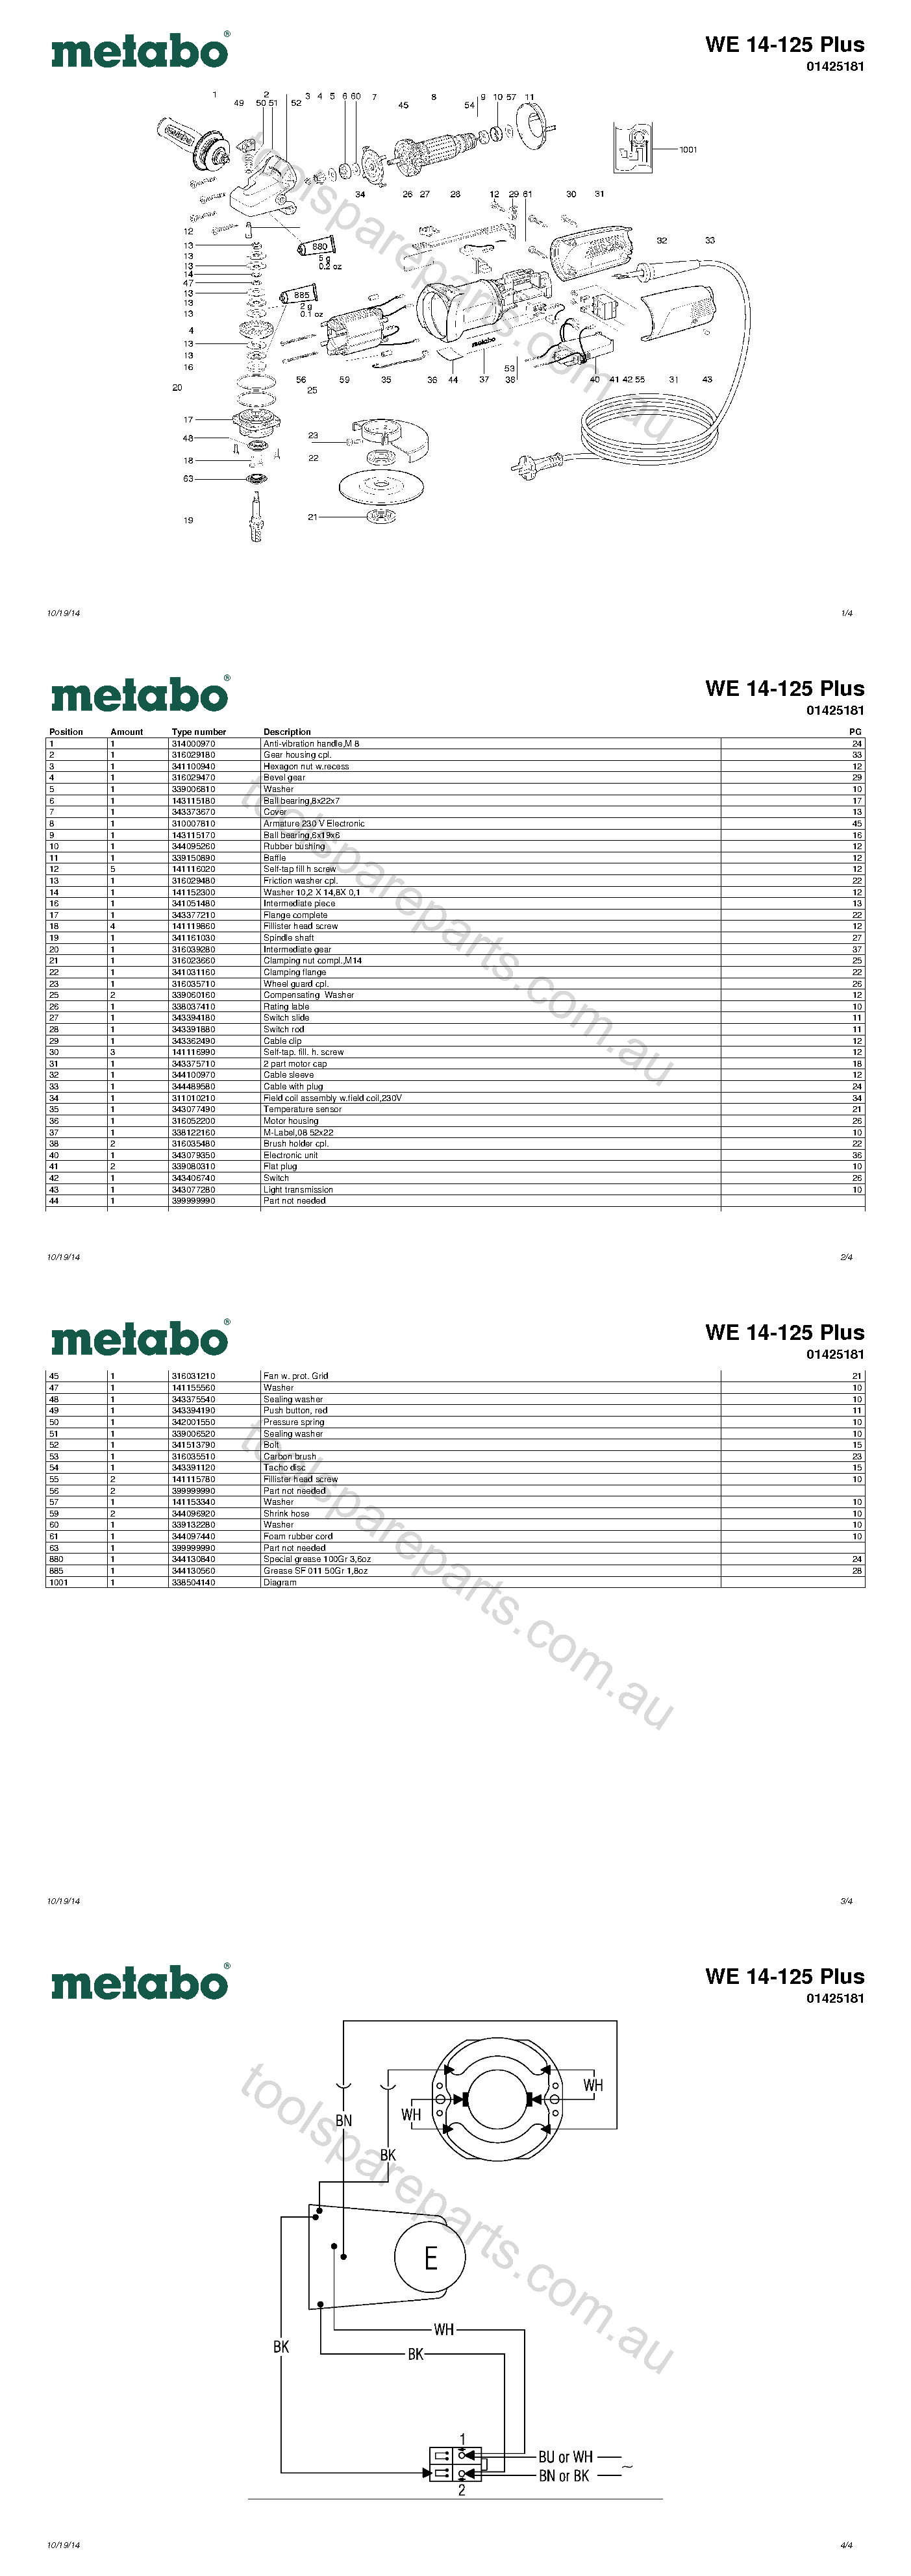 Metabo WE 14-125 Plus 01425181  Diagram 1